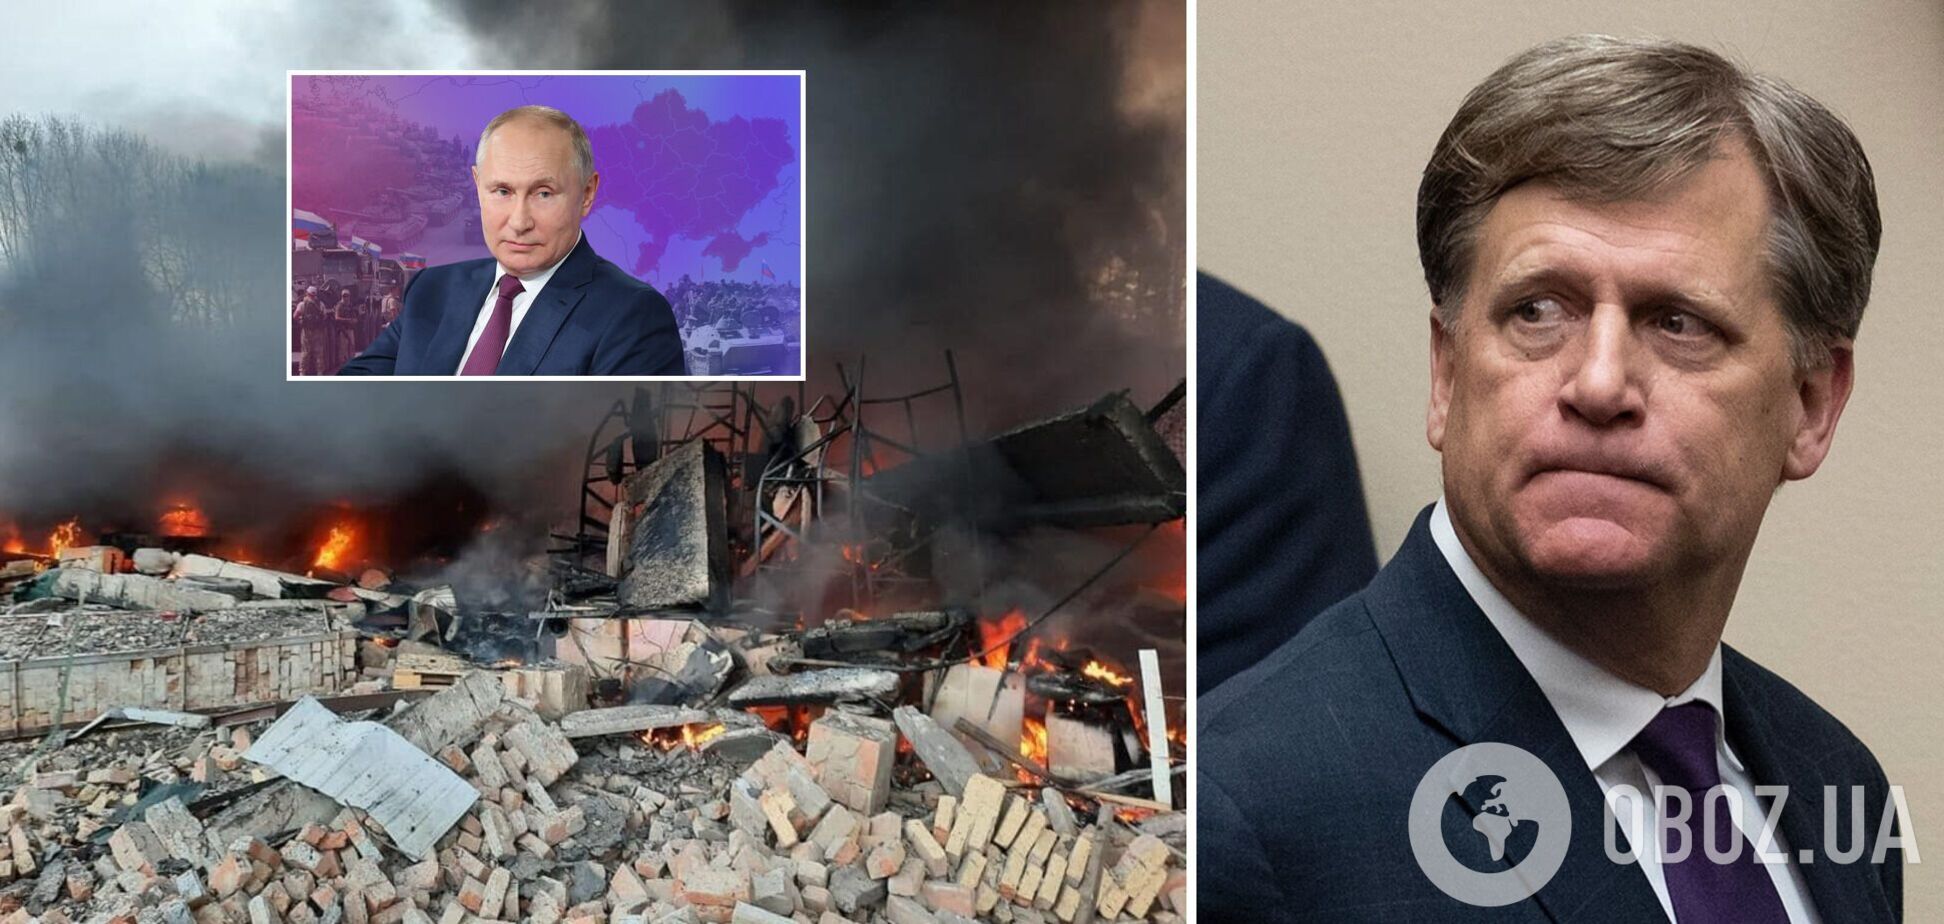 'Ему все равно, сколько будет погибших': Макфол дал прогноз, может ли Путин остановить войну против Украины